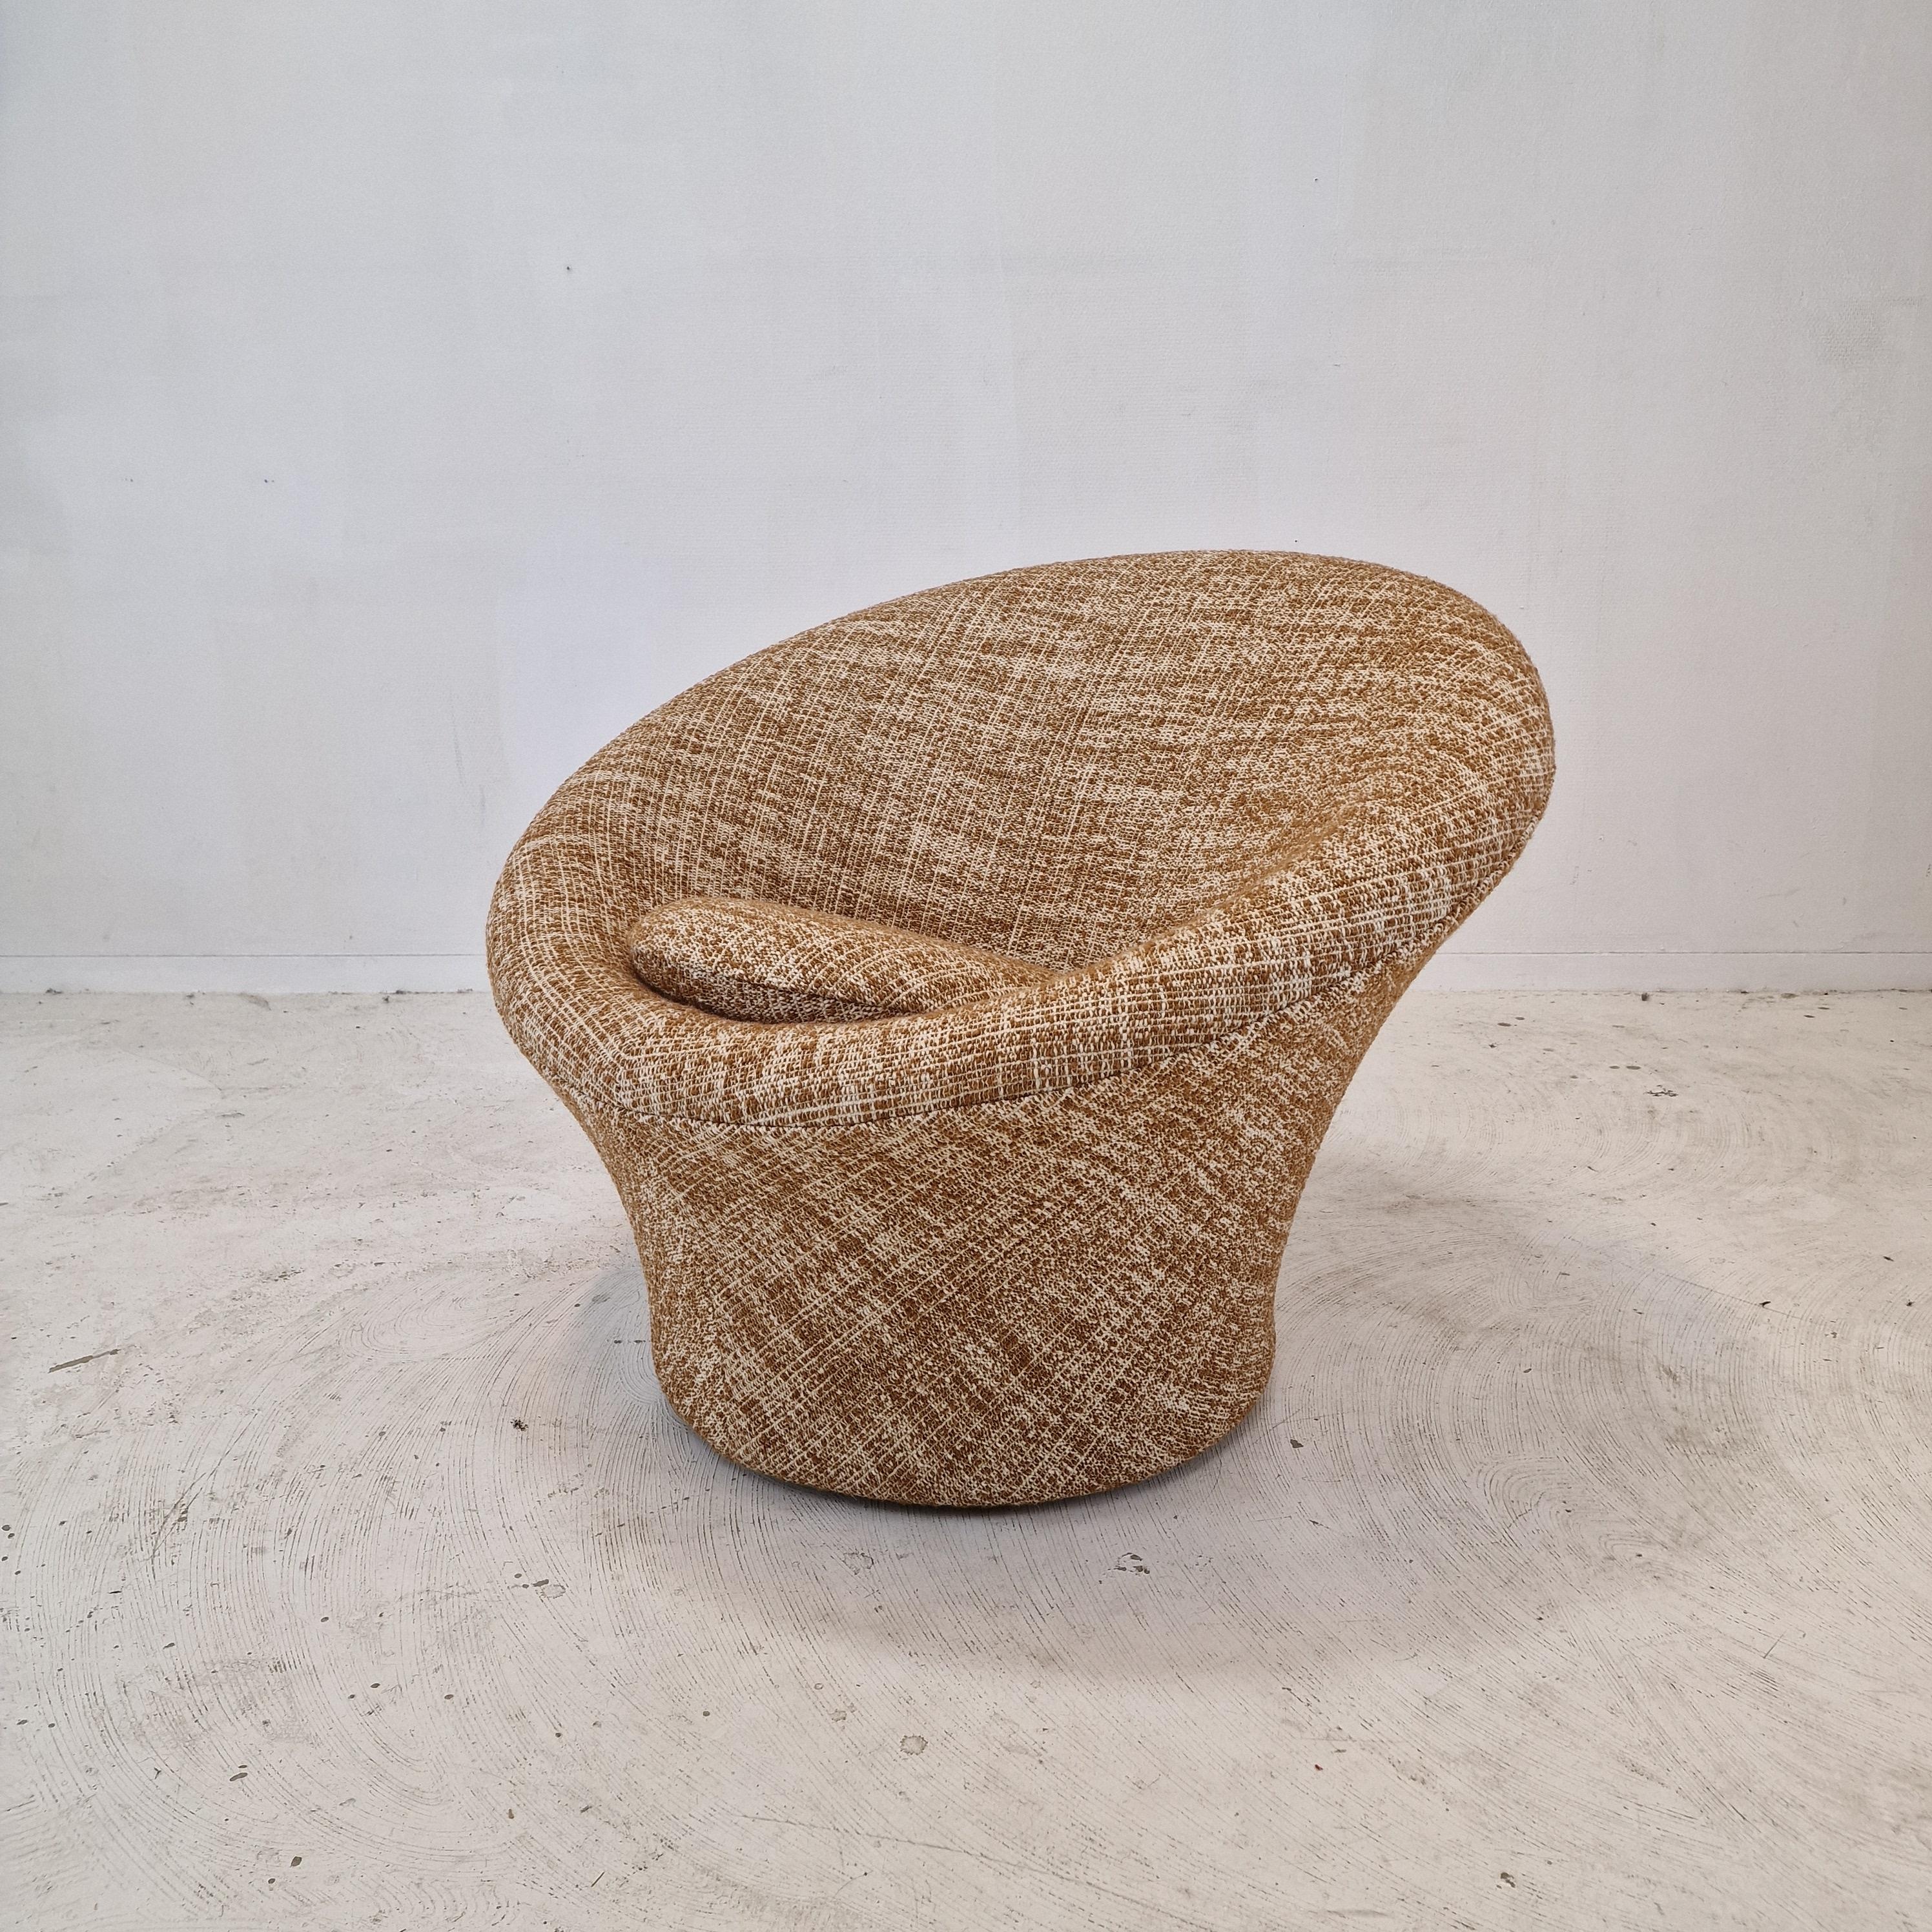 Sehr bequemer und gemütlicher Artifort Mushroom Stuhl, entworfen von Pierre Paulin in den 60er Jahren. 
Dieser besondere Stuhl wurde in den 80er Jahren hergestellt.

Bezogen mit einem sehr schönen skandinavischen Wollstoff.

Der Stuhl ist komplett